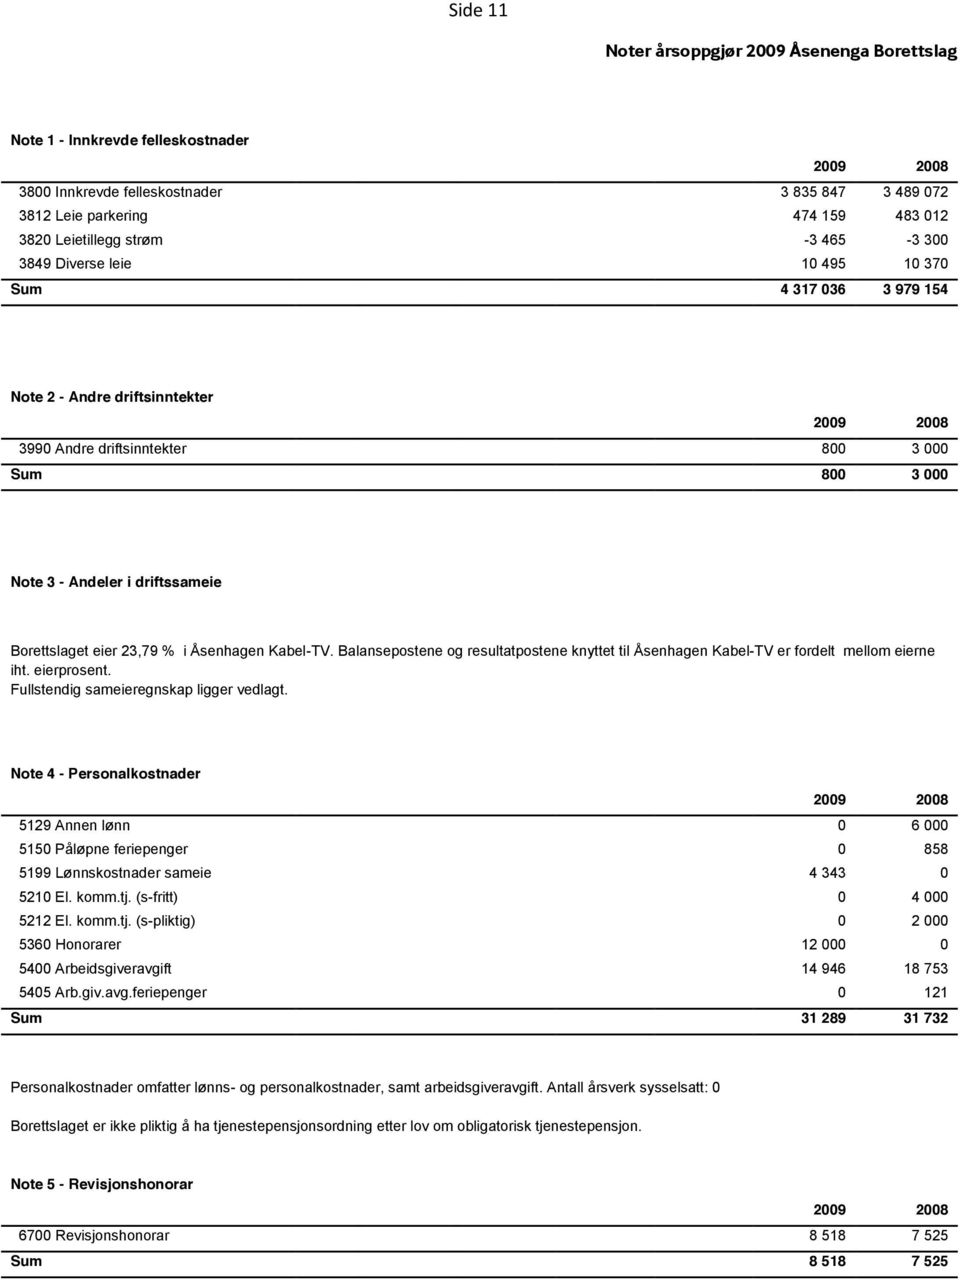 Andeler i driftssameie Borettslaget eier 23,79 % i Åsenhagen Kabel-TV. Balansepostene og resultatpostene knyttet til Åsenhagen Kabel-TV er fordelt mellom eierne iht. eierprosent.